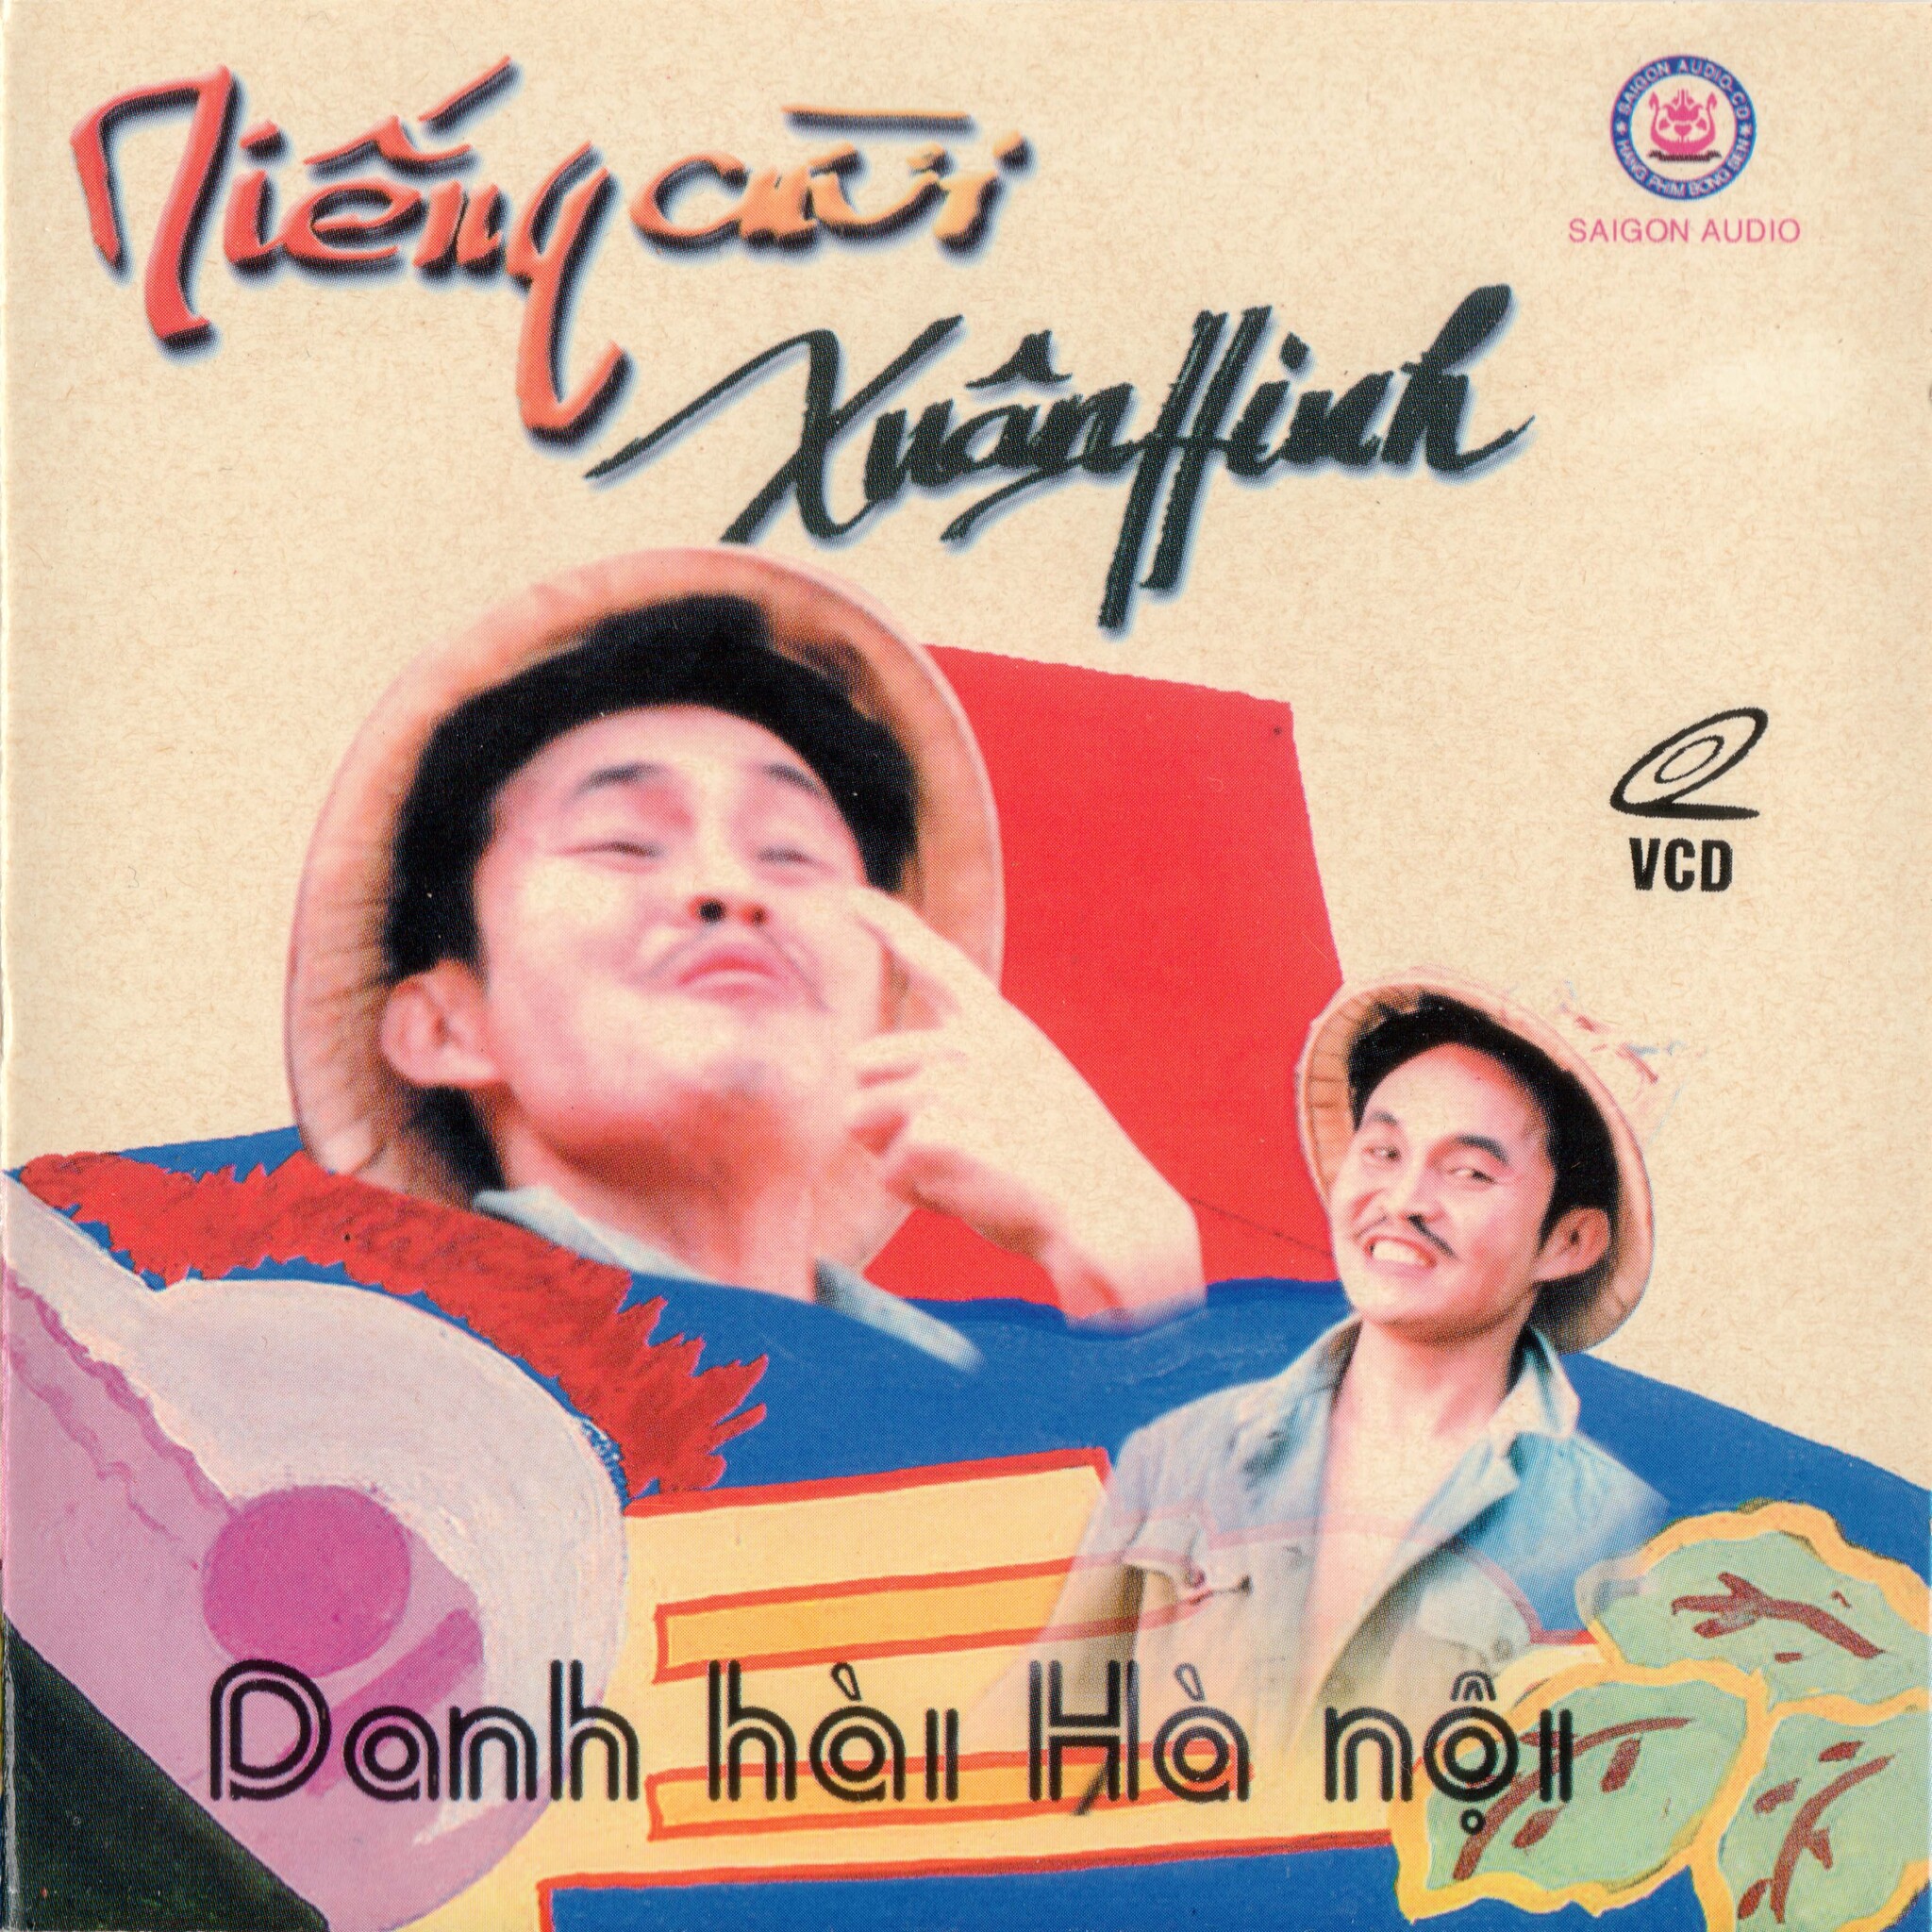 Sài Gòn AV – Tiếng Cười Xuân Hinh – VCD (2000)